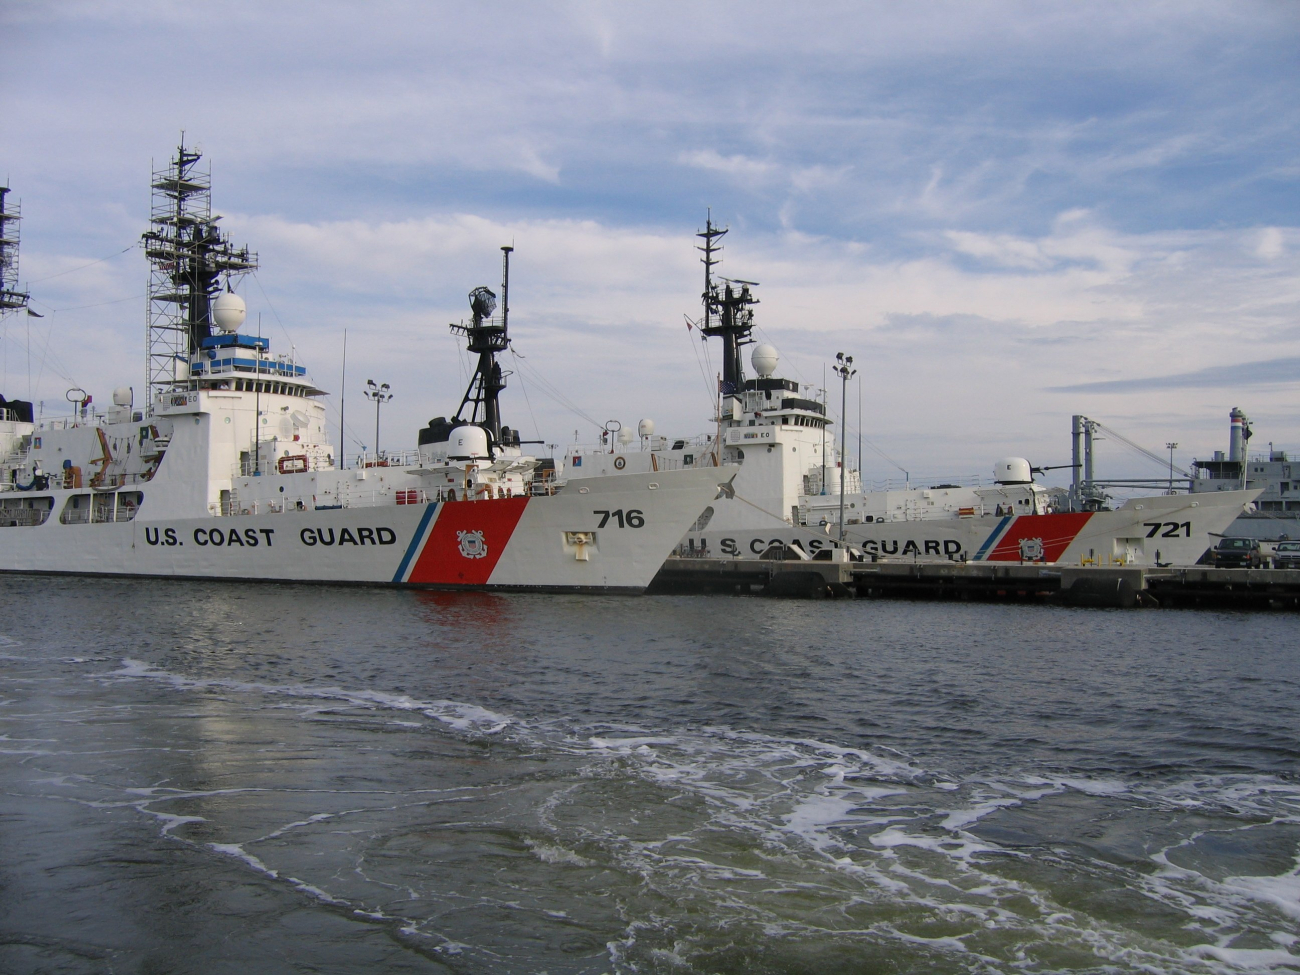 United States Coast Guard Cutters DALLAS (WHEC 716) and GALLATIN (WHEC721)